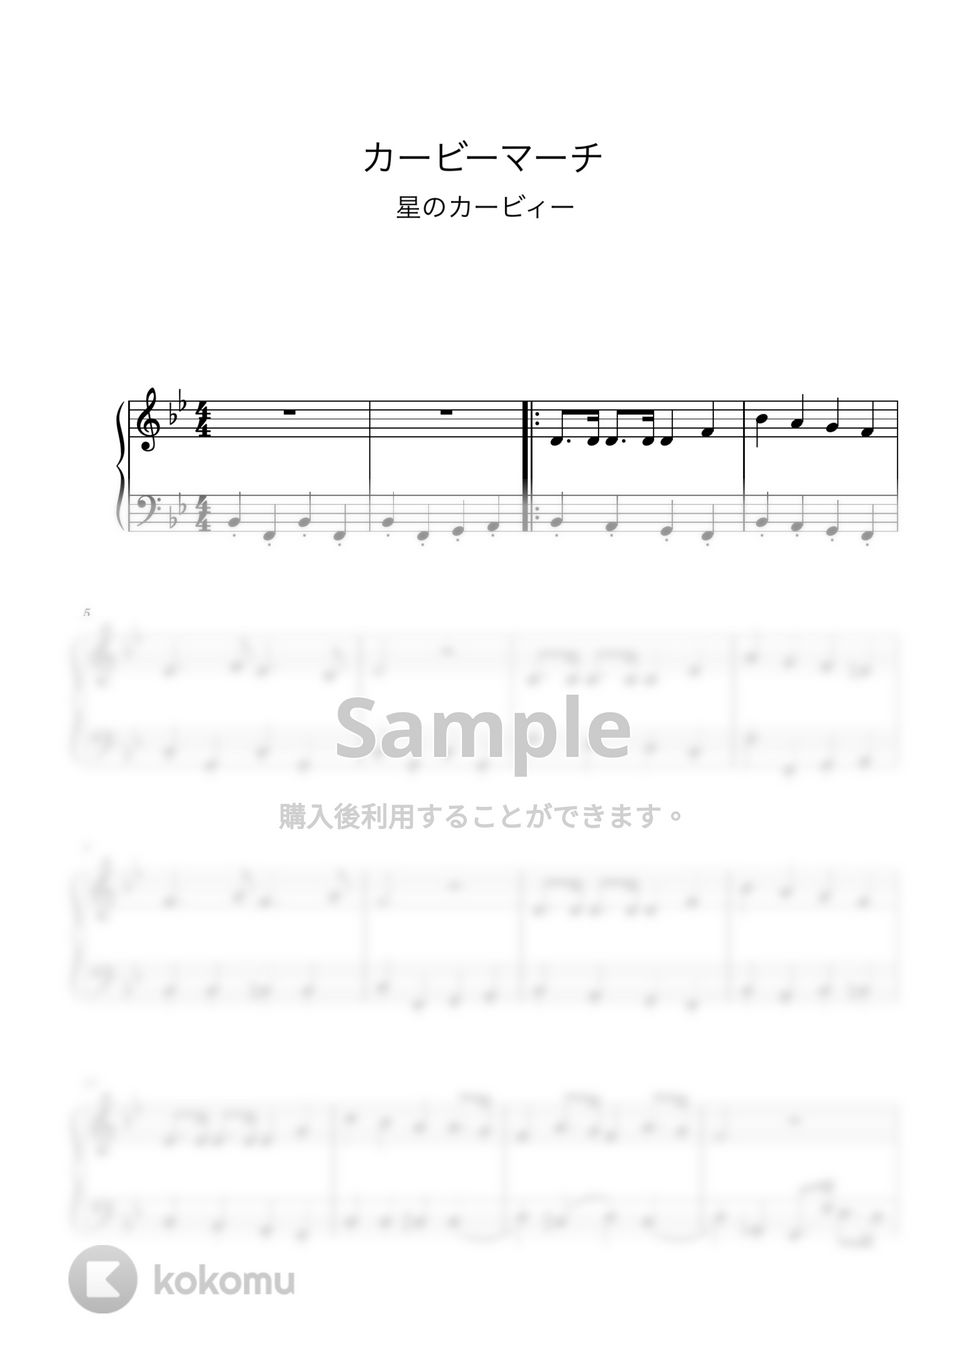 宮川彬良 - カービィマーチ (ピアノ初級ソロ) by pianon楽譜